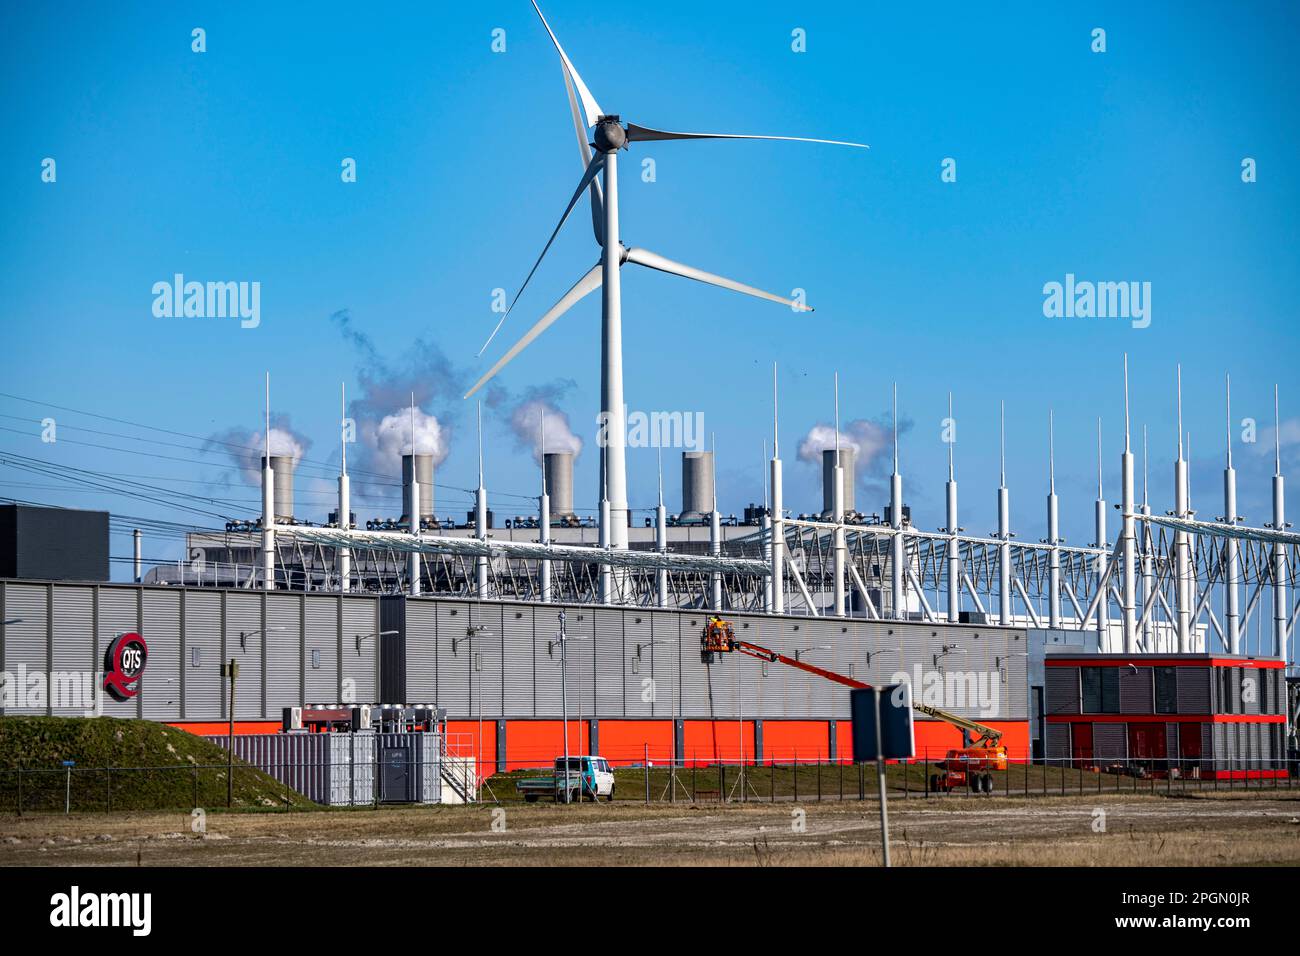 QTC-Rechenzentrum, Datenzentrum, das von Google genutzt wird, unter anderem Schornsteine des Gas- und Dampfkraftwerks Eemscentrale, Windkraftwerk, im Wasser Stockfoto